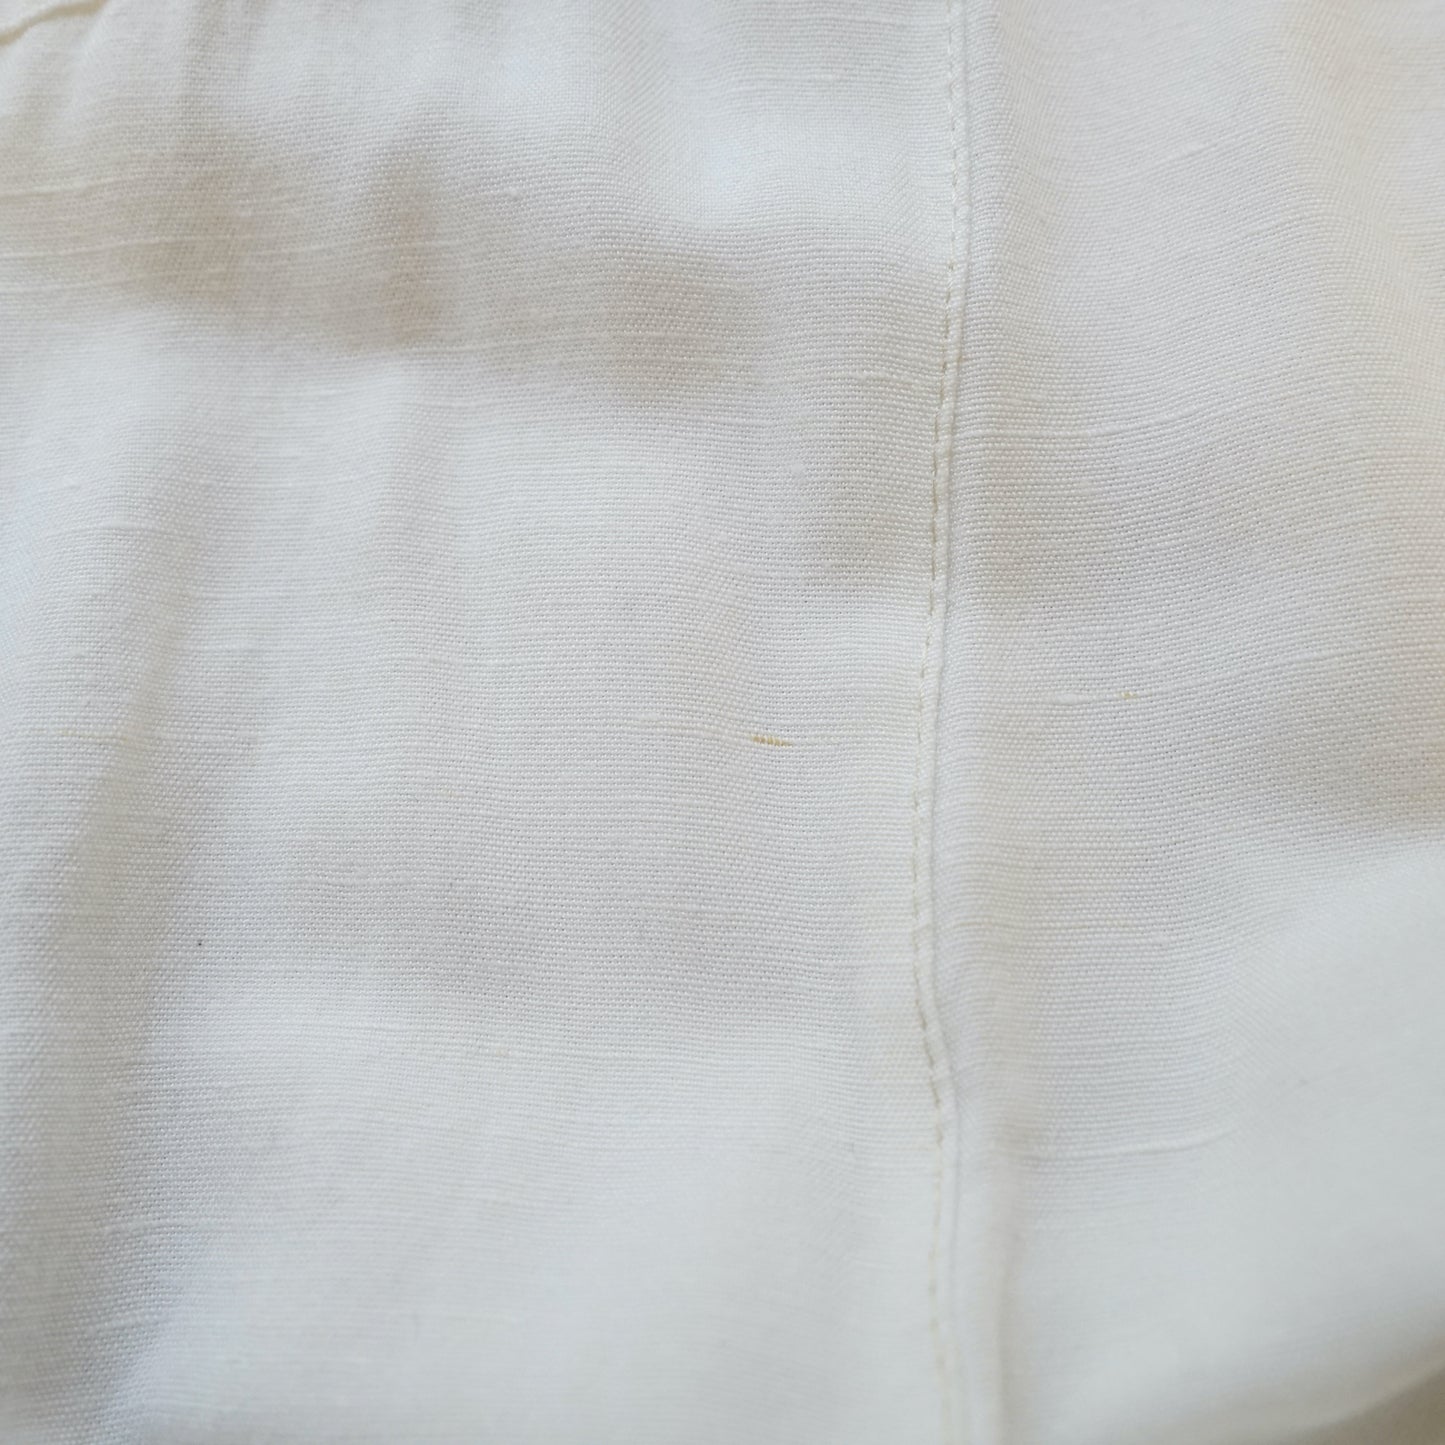 Vintage white Dress size L-XL